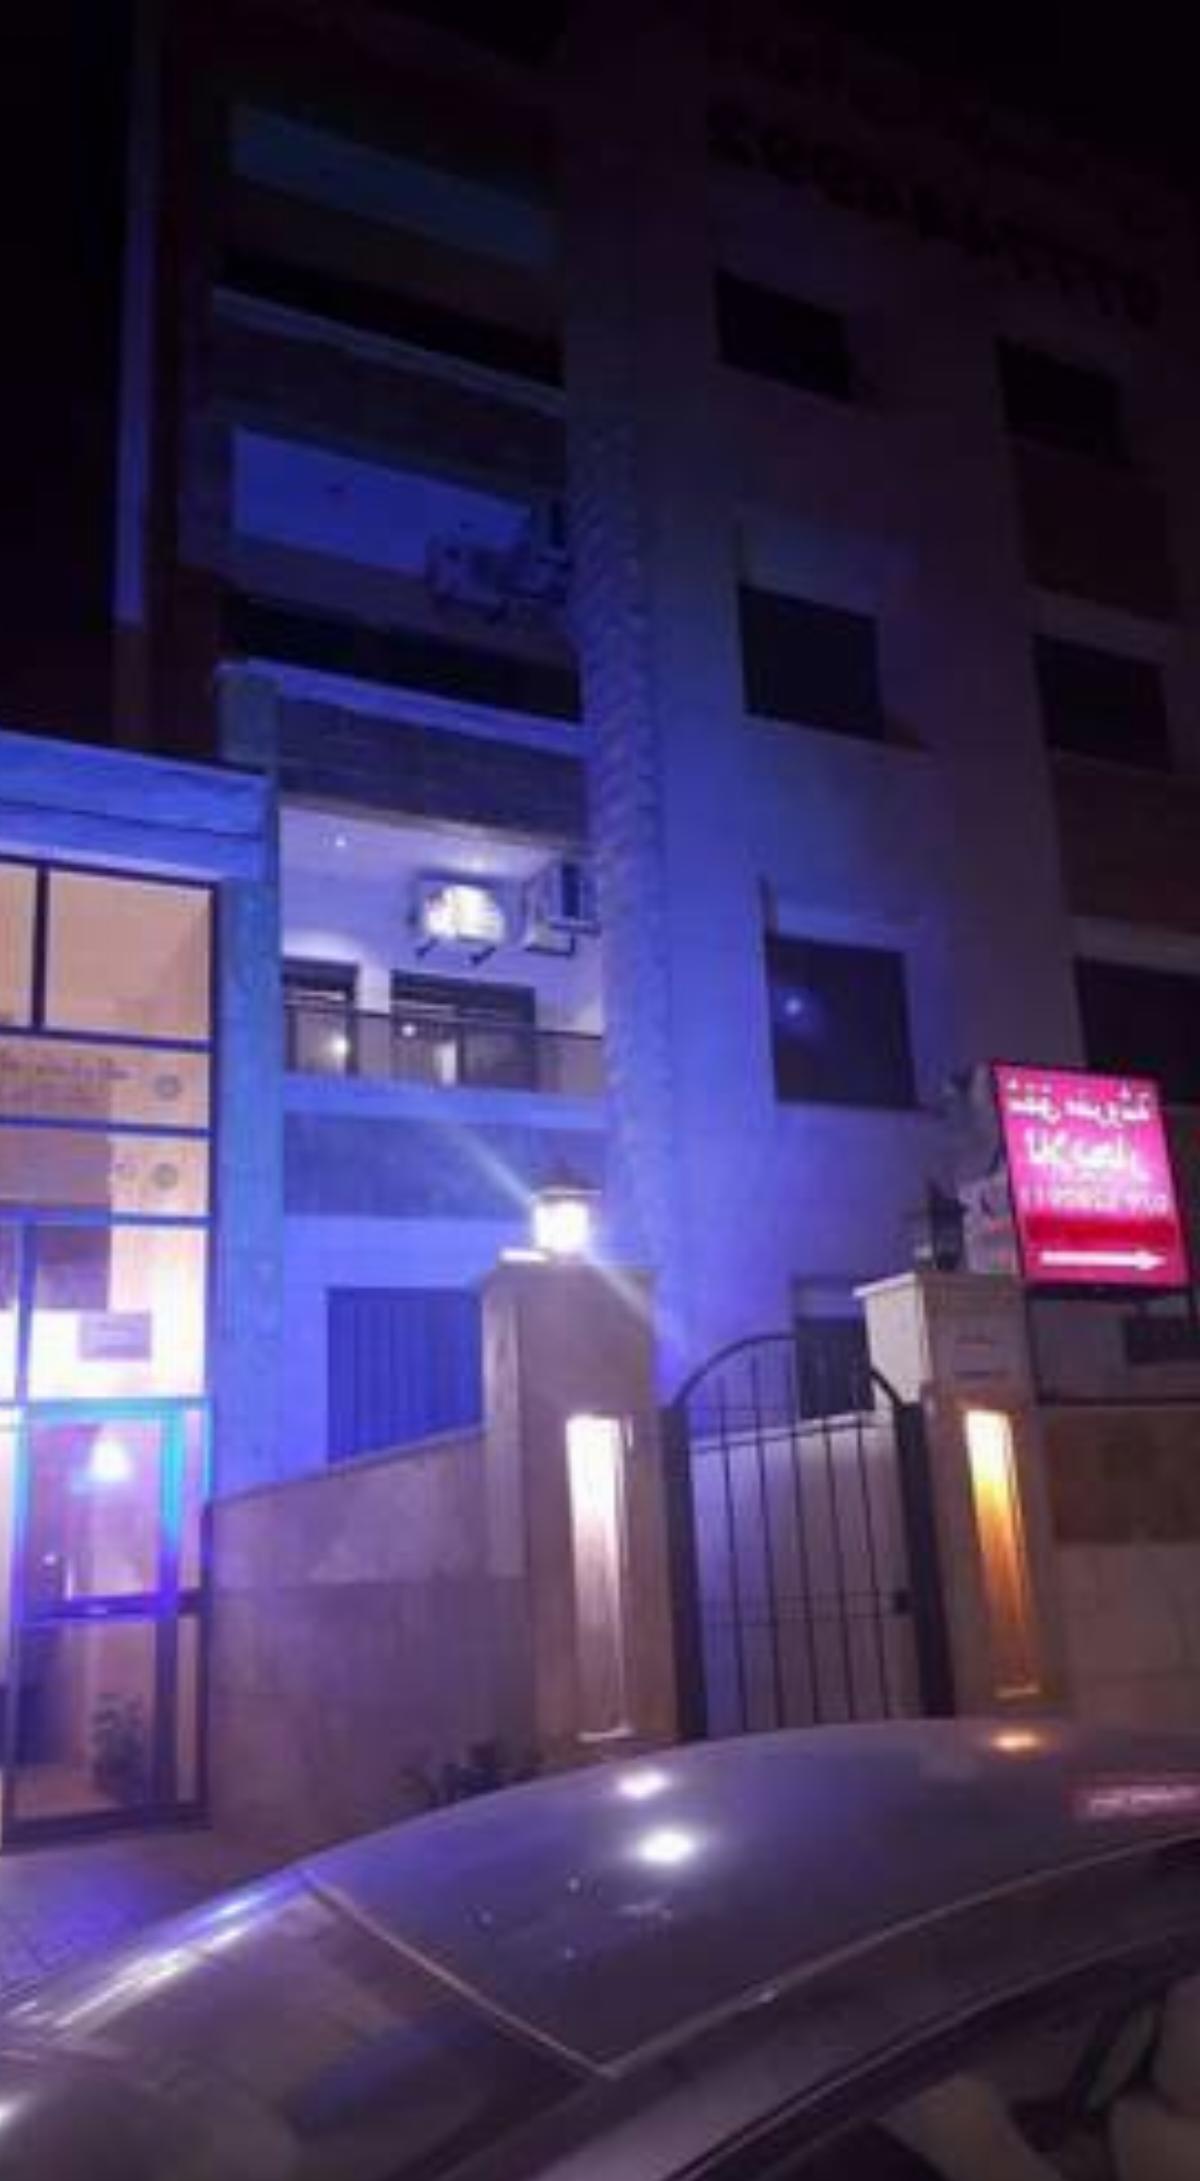 khayat apartments 2 Hotel Amman Jordan